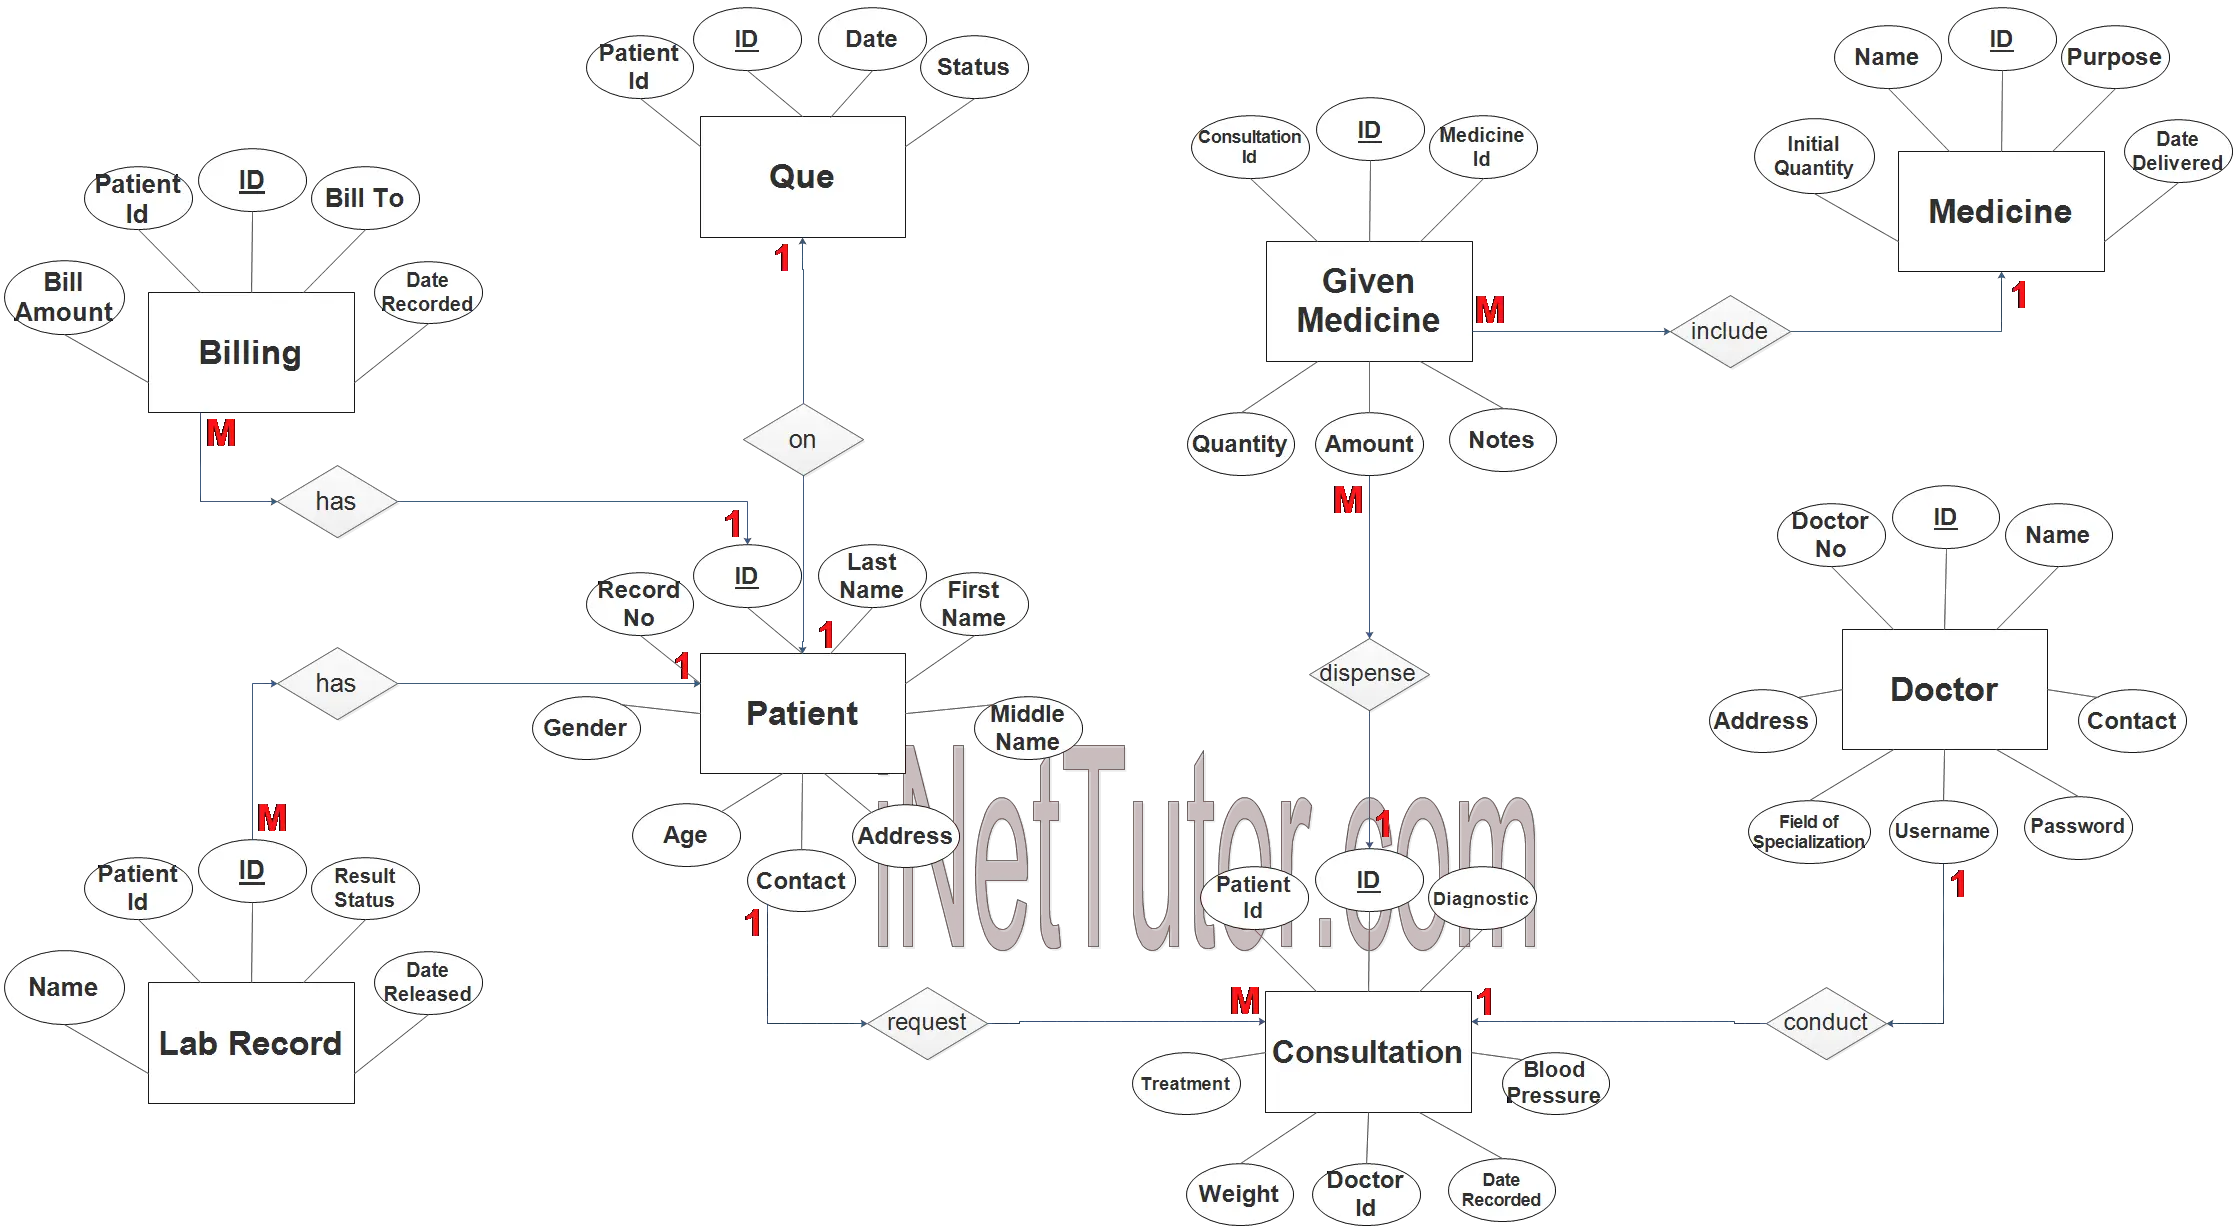 Medical Record and Billing System ER Diagram - Step 3 Complete ERD